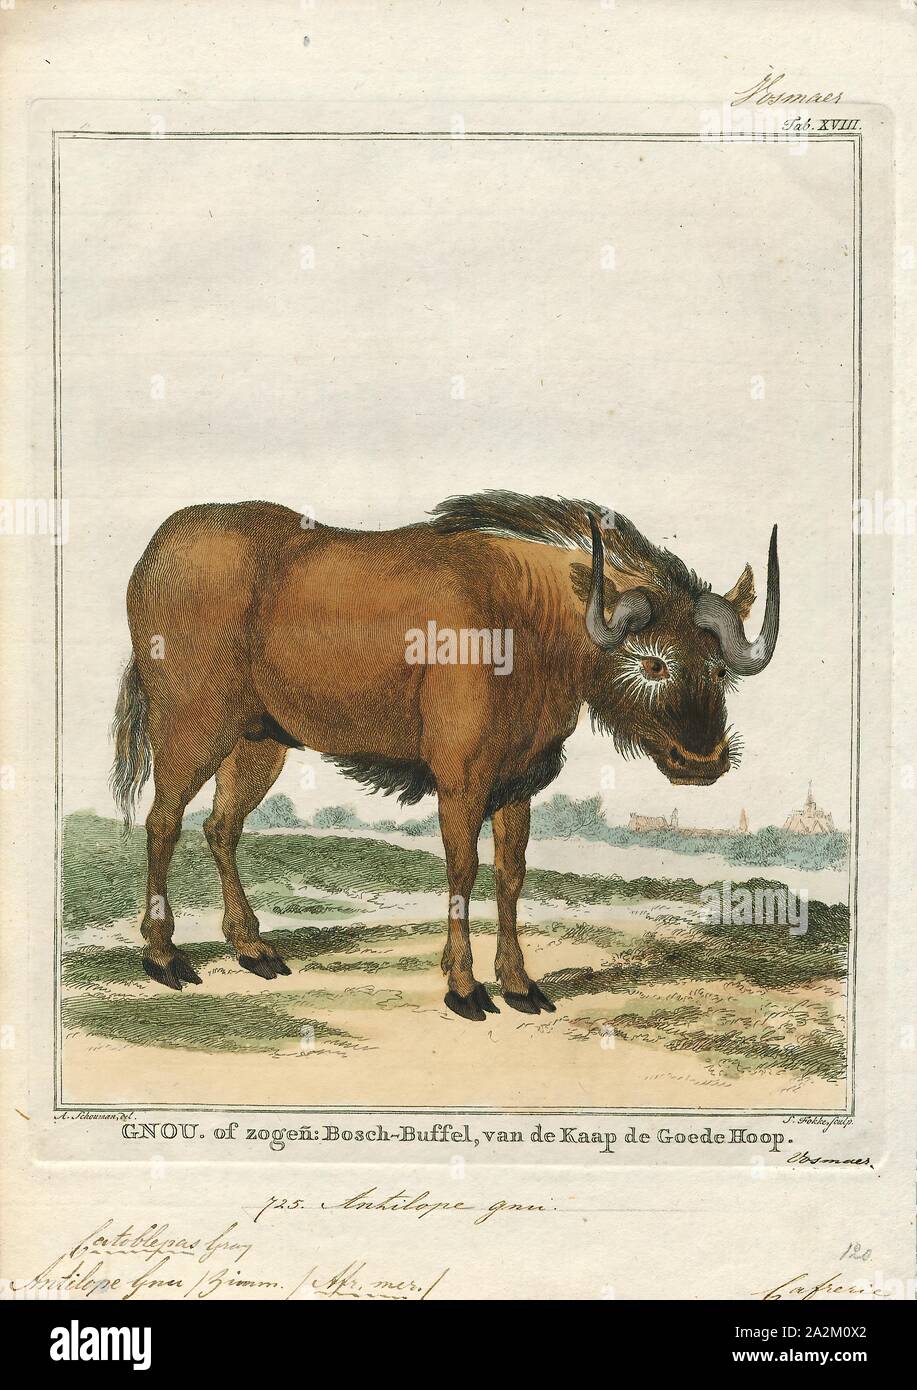 Antilope gnu, stampa, il GNU nero o bianco-tailed gnu (Connochaetes gnou) è uno dei due strettamente correlati gnu specie. Si tratta di un organo del genere Connochaetes e famiglia bovidi. Essa è stata descritta per la prima volta nel 1780 da Eberhard August Wilhelm von Zimmermann. Il nero gnu è tipicamente 170-220 cm (67-87) in testa e la lunghezza del corpo e il peso tipico è di 110 180 kg (240-400 lb). I maschi di stand di circa 111-121 cm (44-48 in.) in corrispondenza della spalla, mentre l'altezza delle femmine è 106-116 cm (42-46 in.). Il nero gnu è caratterizzato dalle sue bianche, lungo, cavallo-come tail. Esso inoltre Foto Stock